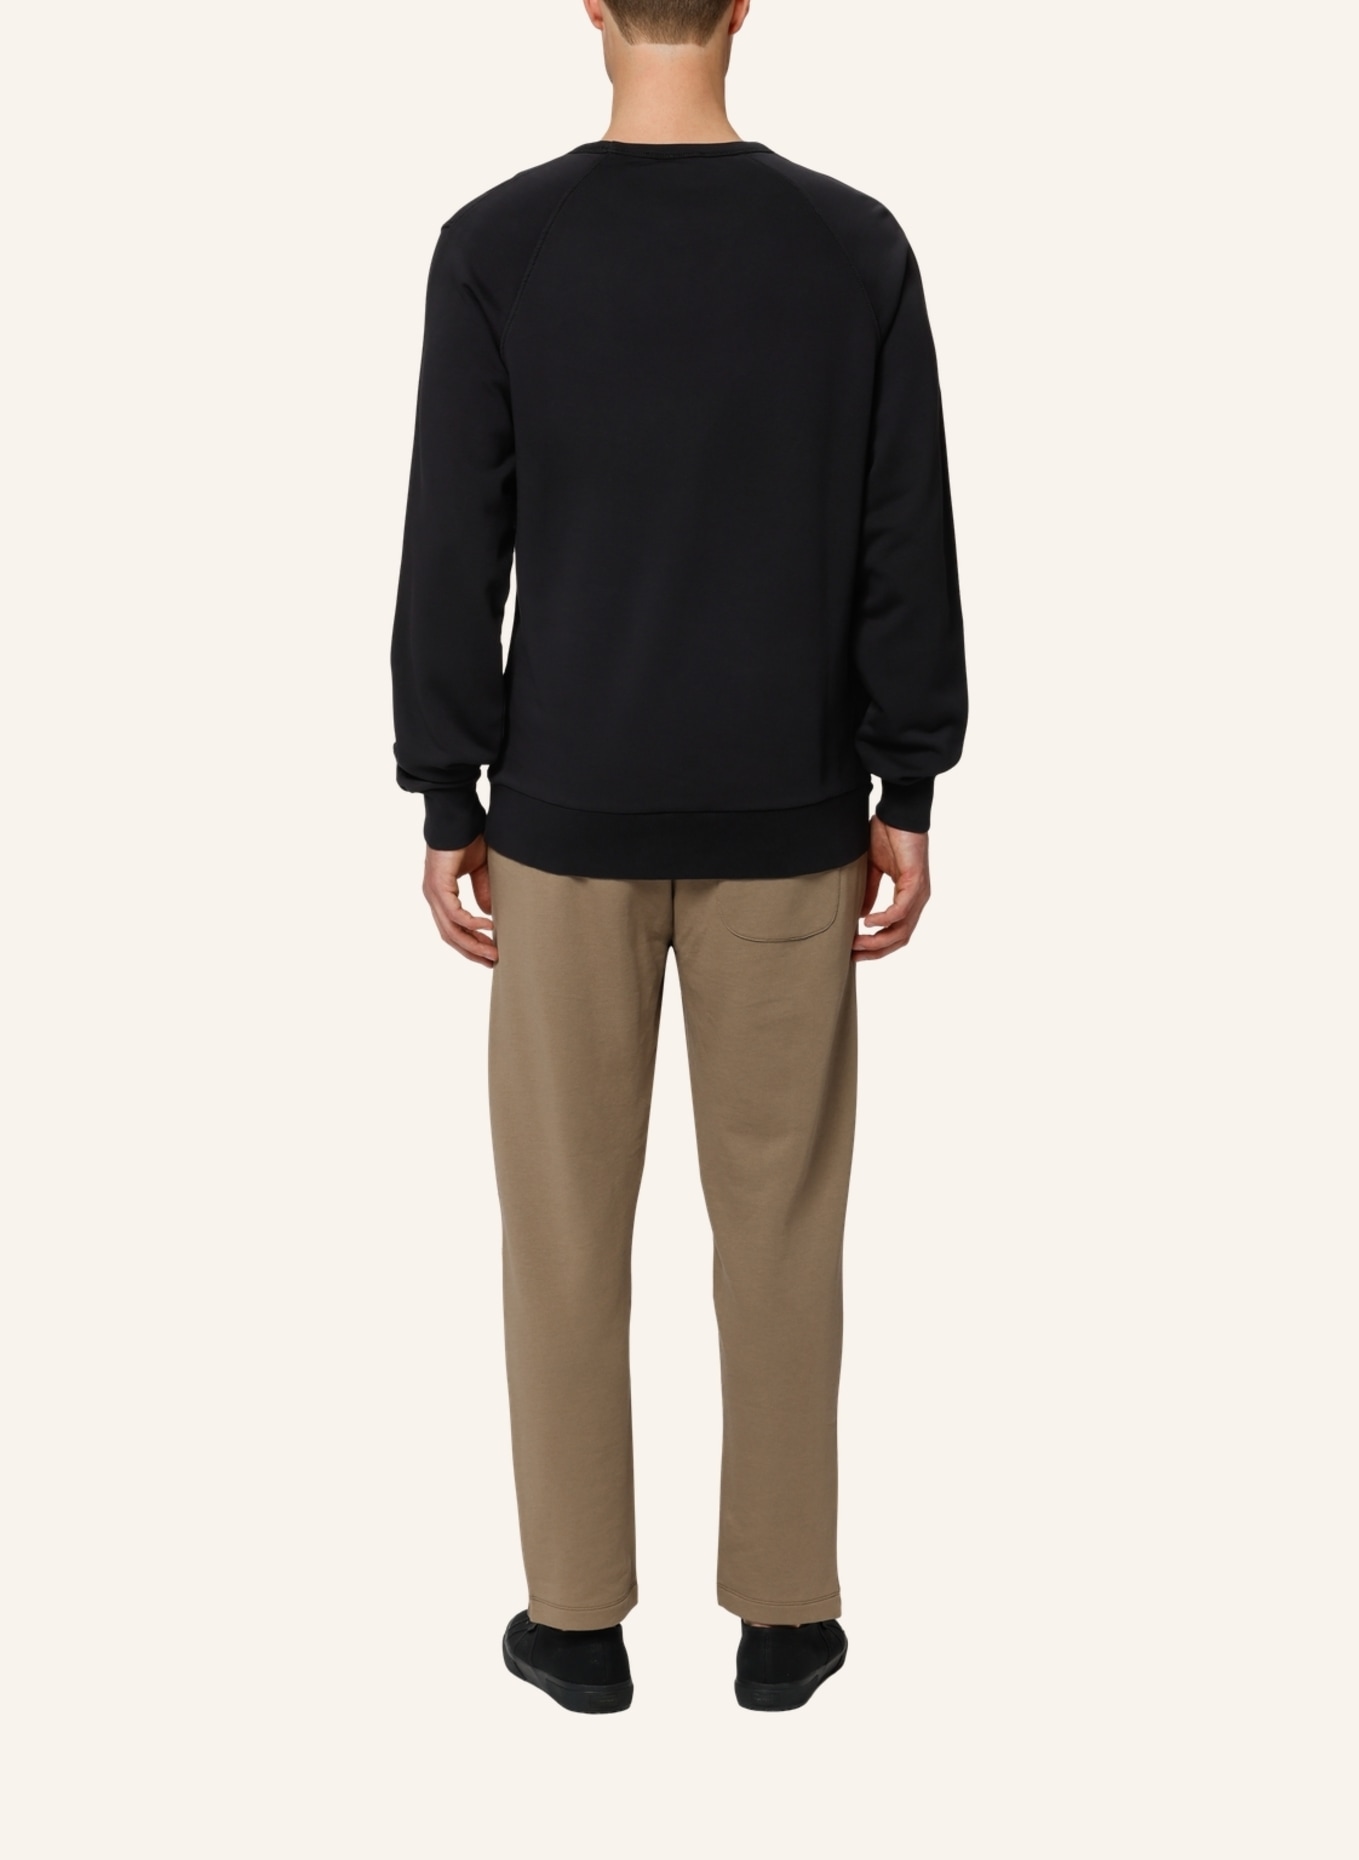 TRUSTED HANDWORK Sweatshirt Regular Fit, Farbe: SCHWARZ (Bild 2)